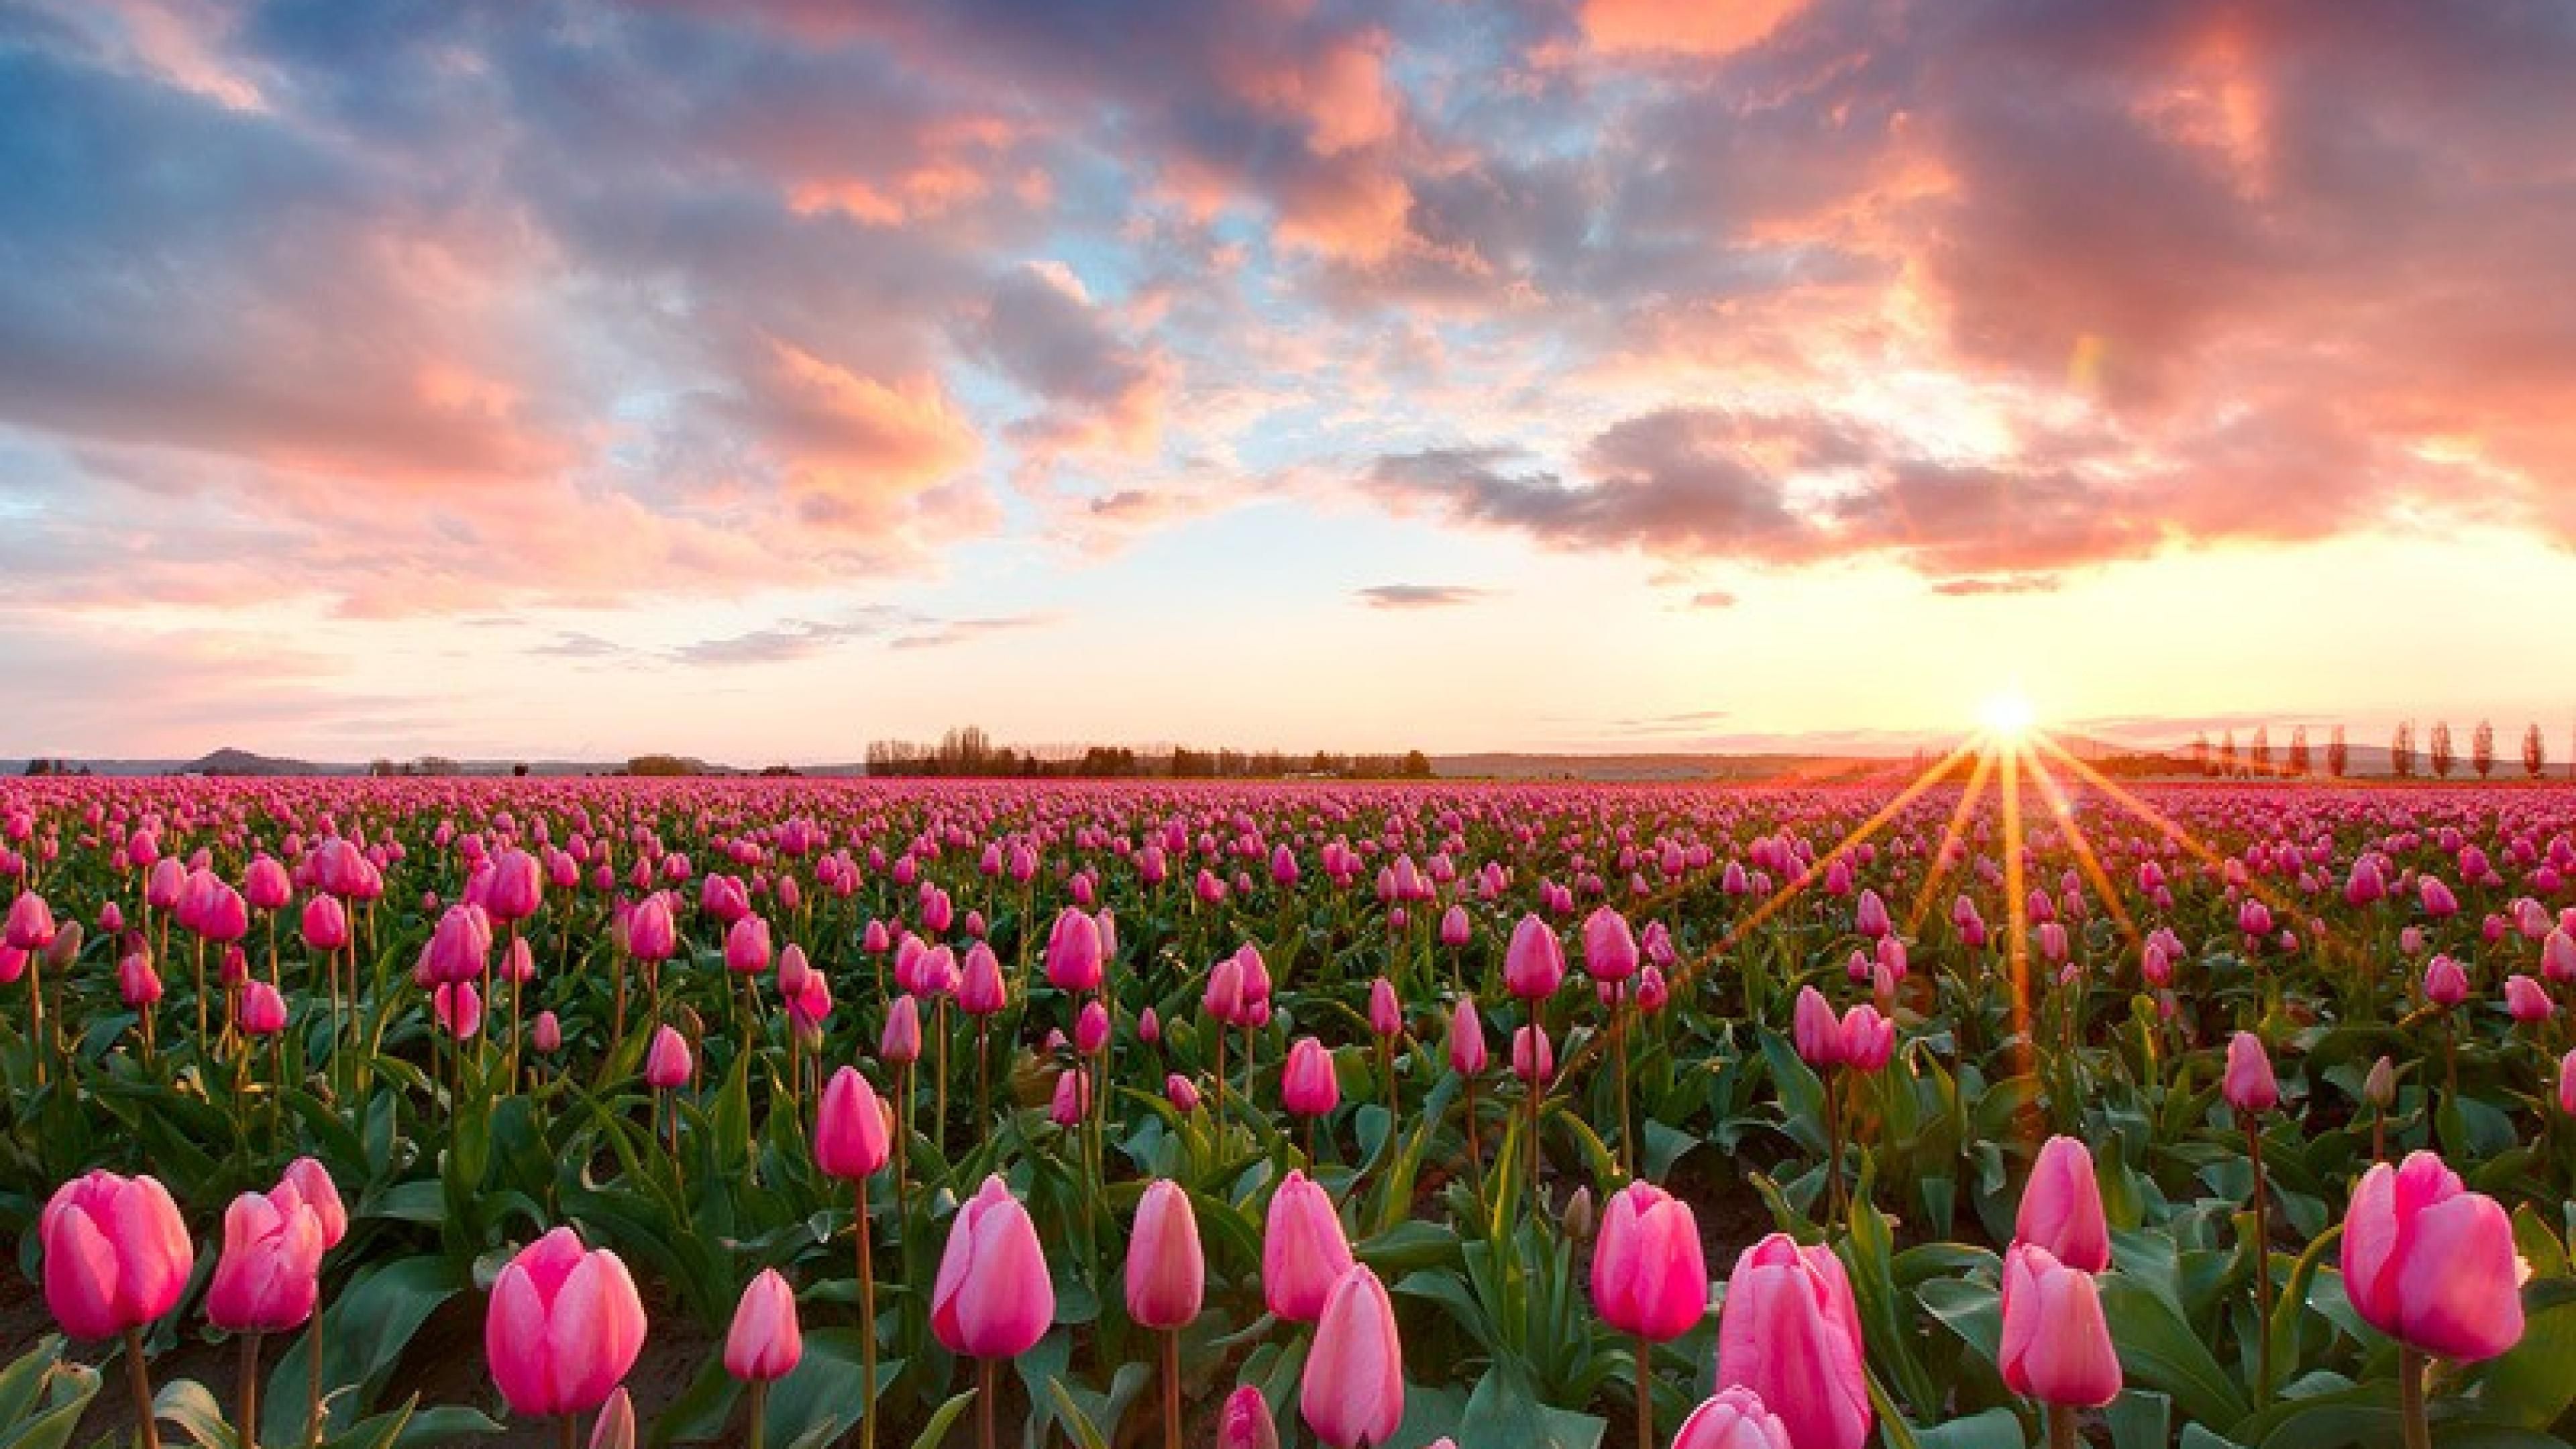 Skagit Valley, Washington. Tulip fields, Field wallpaper, Skagit valley tulip festival